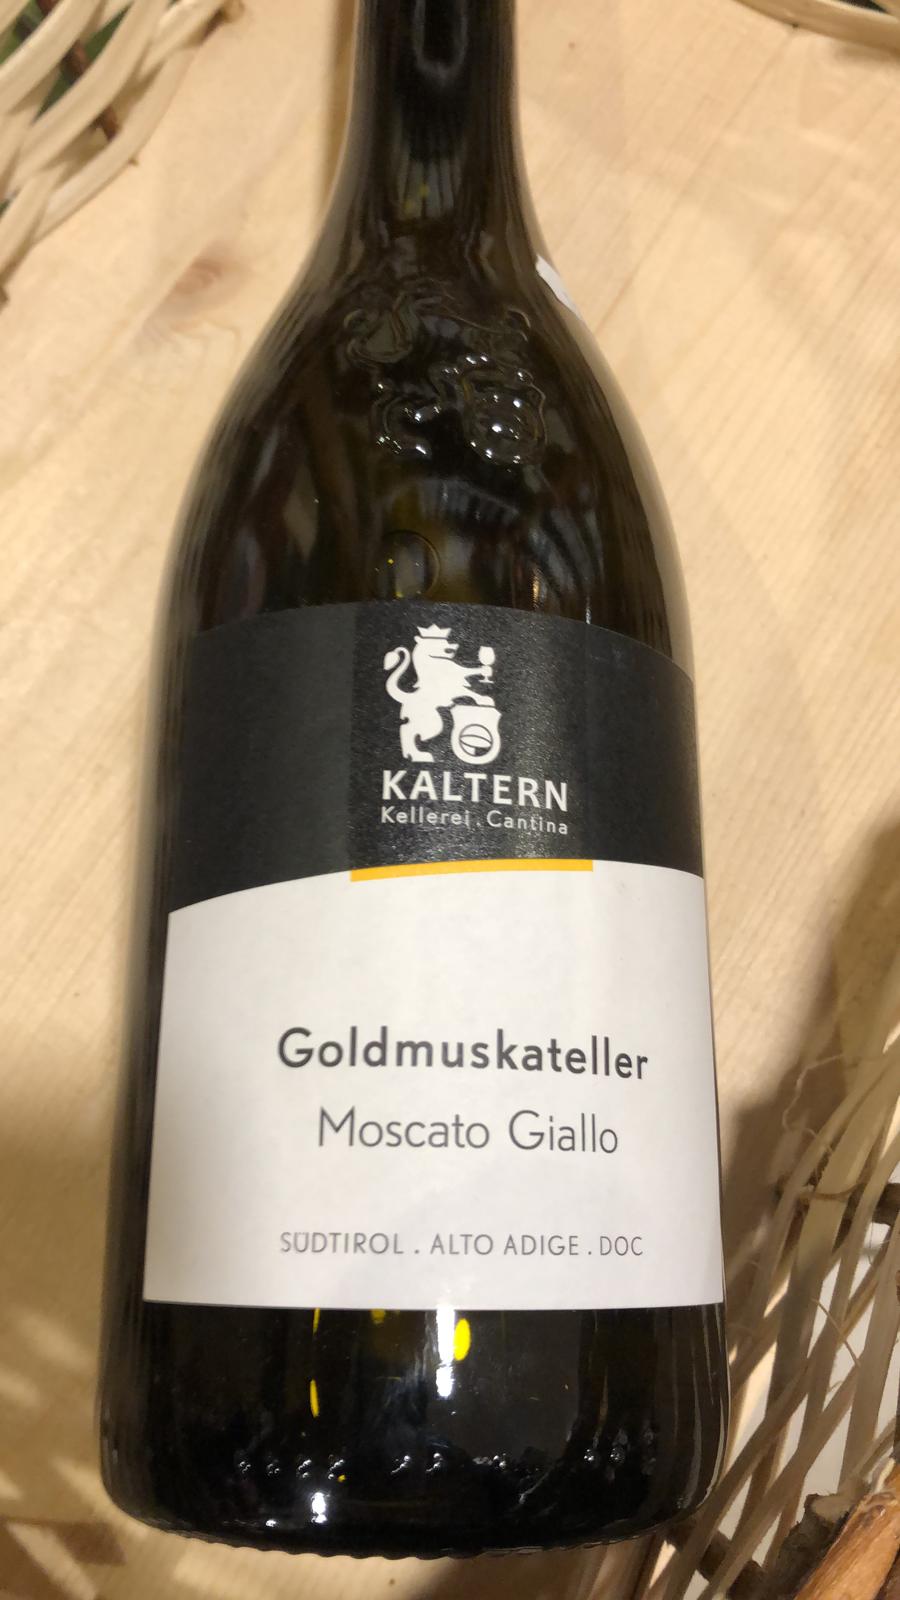 Kaltern - Goldmuskatellern, Moscato Giallo